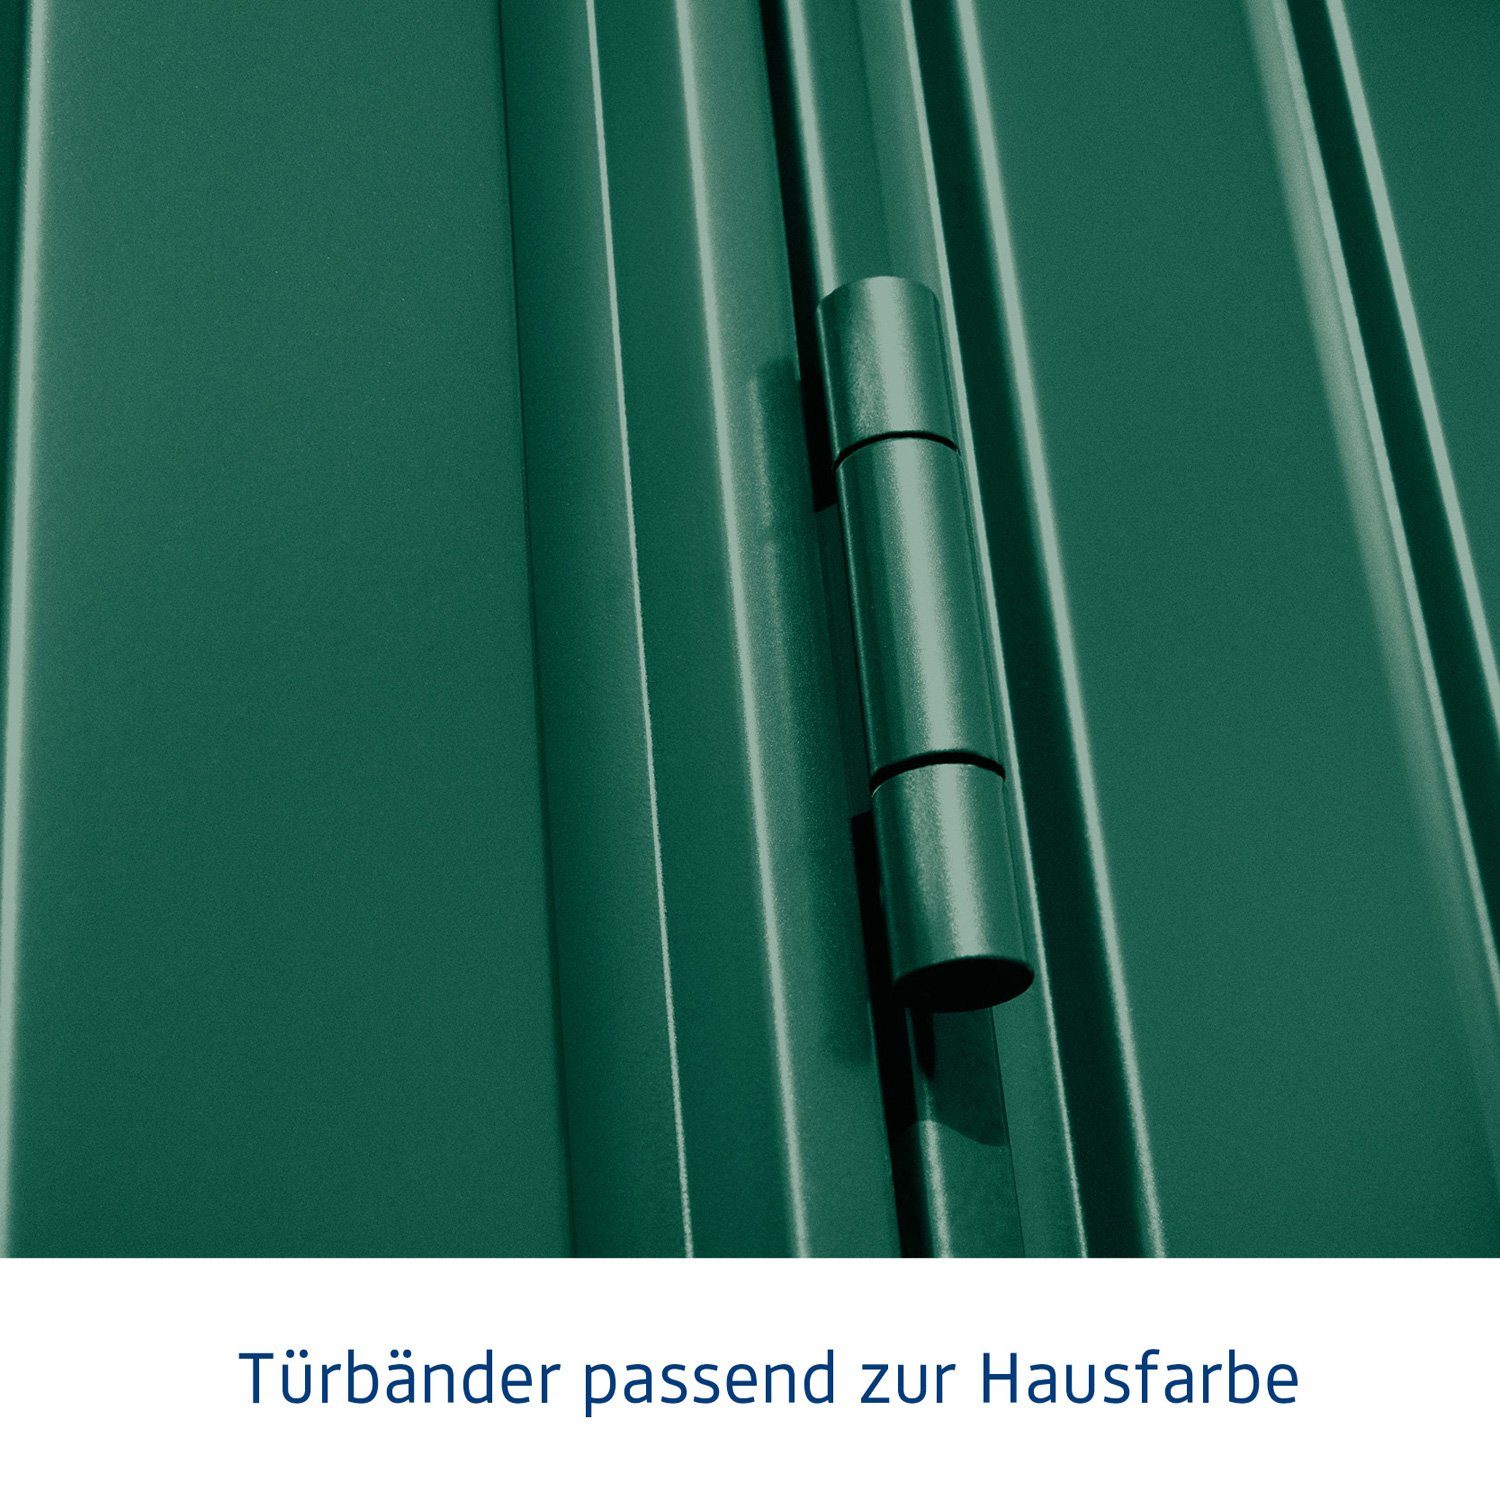 Hörmann Trend mit Gerätehaus Pultdach Ecostar Metall-Gerätehaus 1-flüglige Tür 3, Typ moosgrün